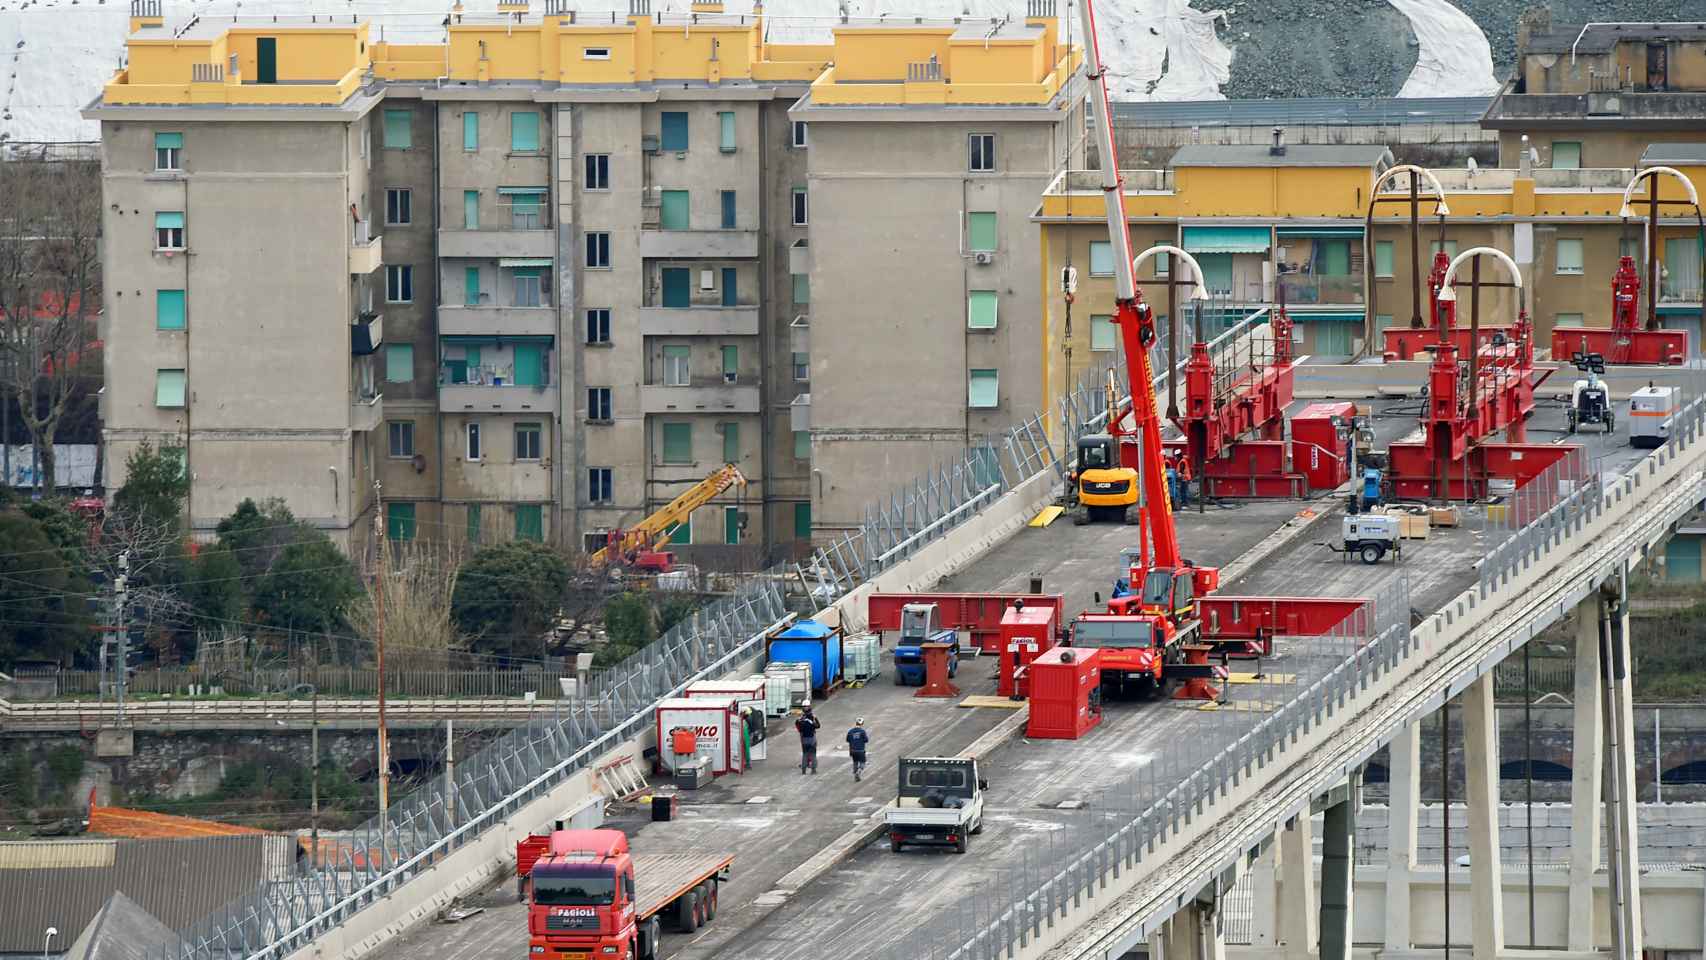 La demolición del puente Morandi, en imágenes